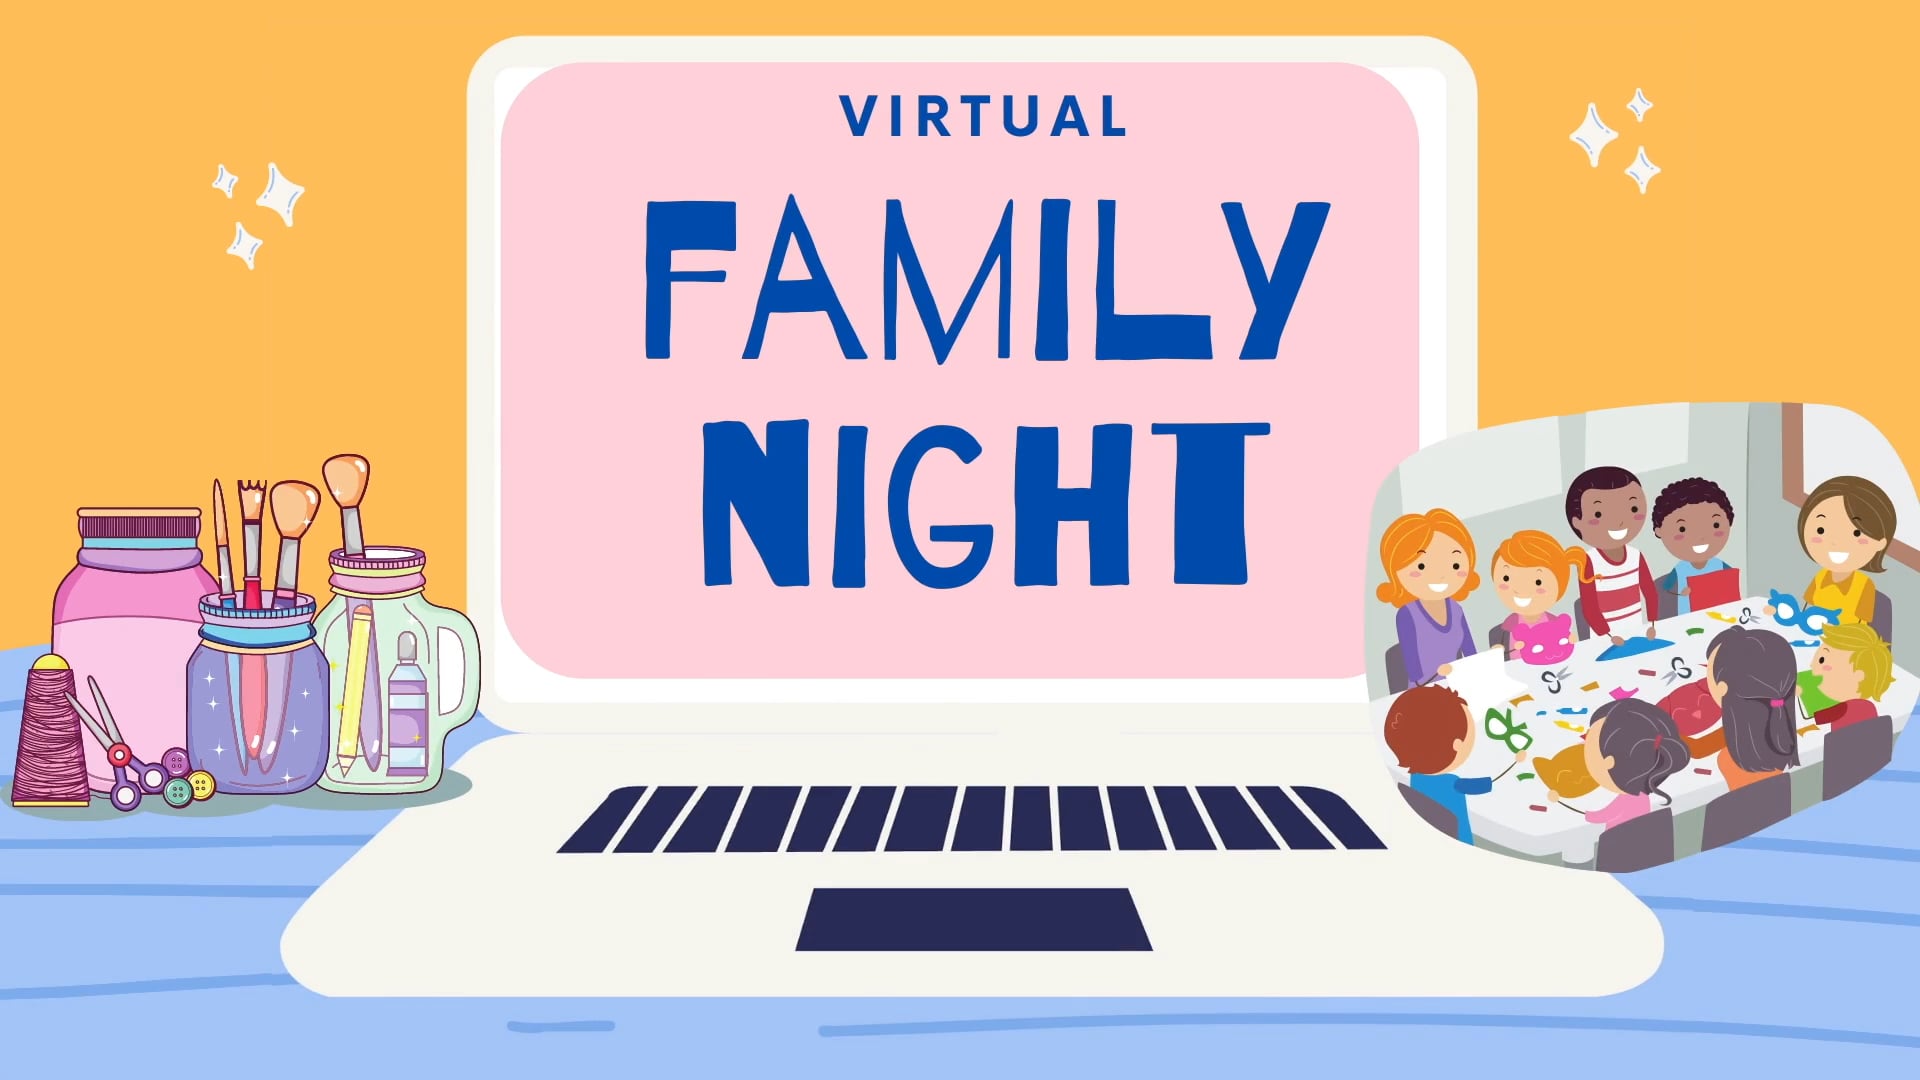 Virtual Family Night 1.16.2021